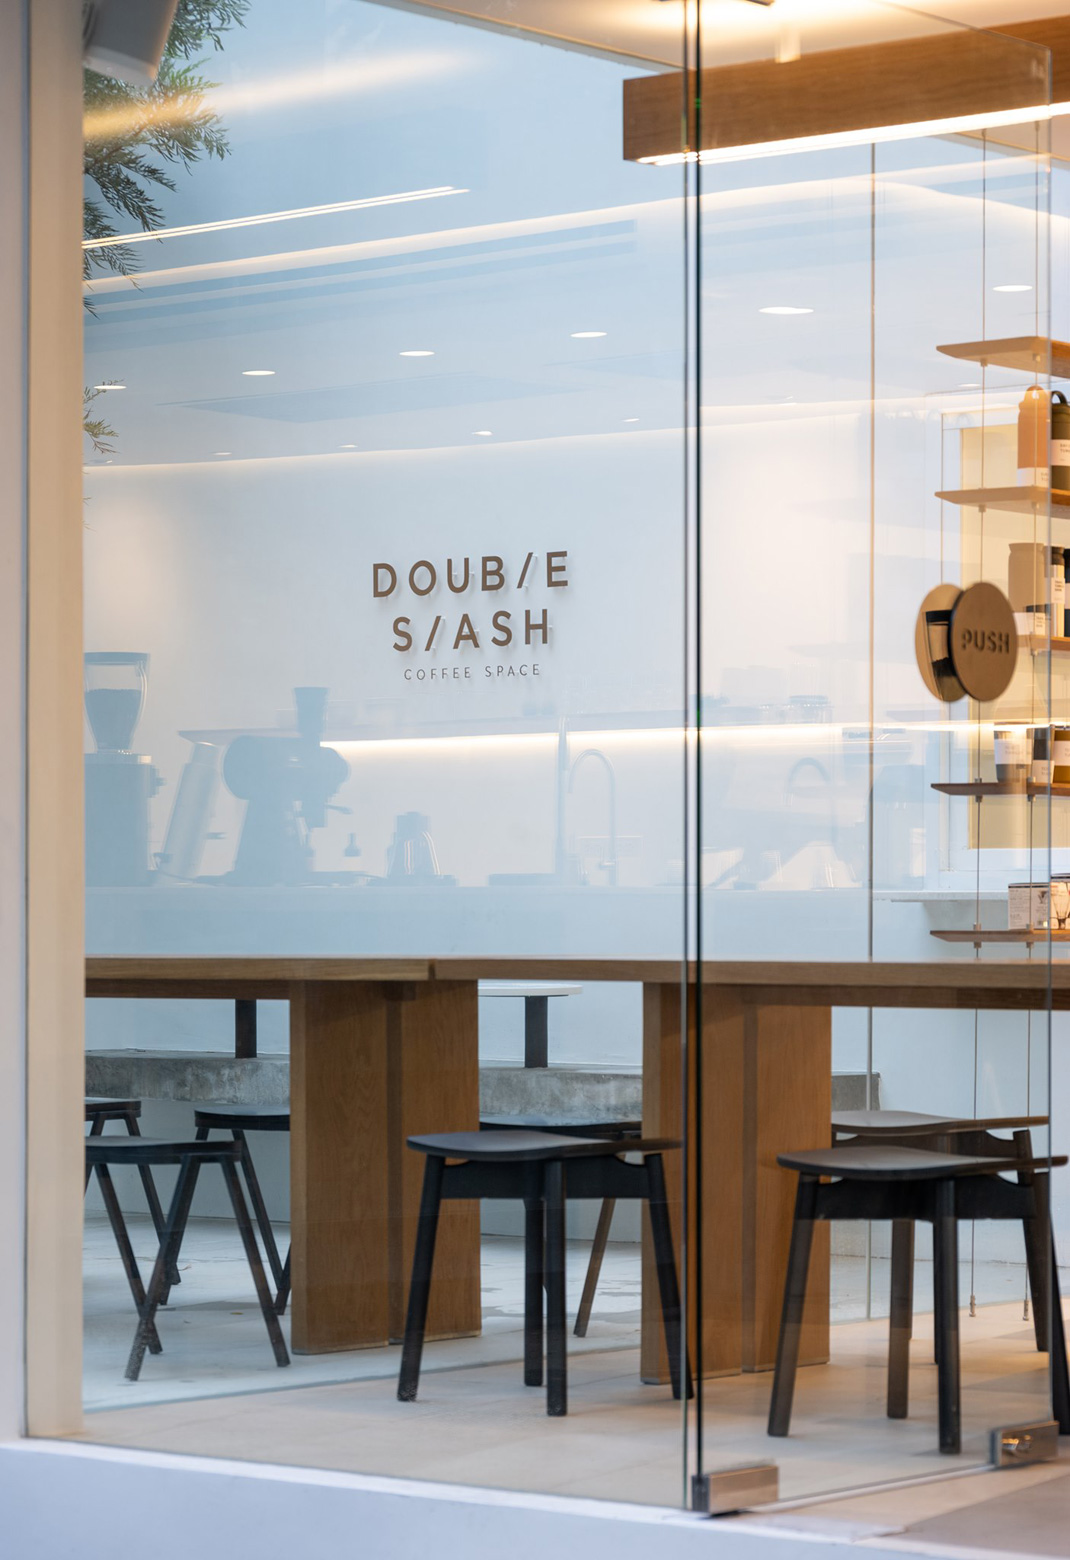 咖啡店Double Slash，Coffee Space 泰国 曼谷 咖啡店 白色空间 网红店 logo设计 vi设计 空间设计